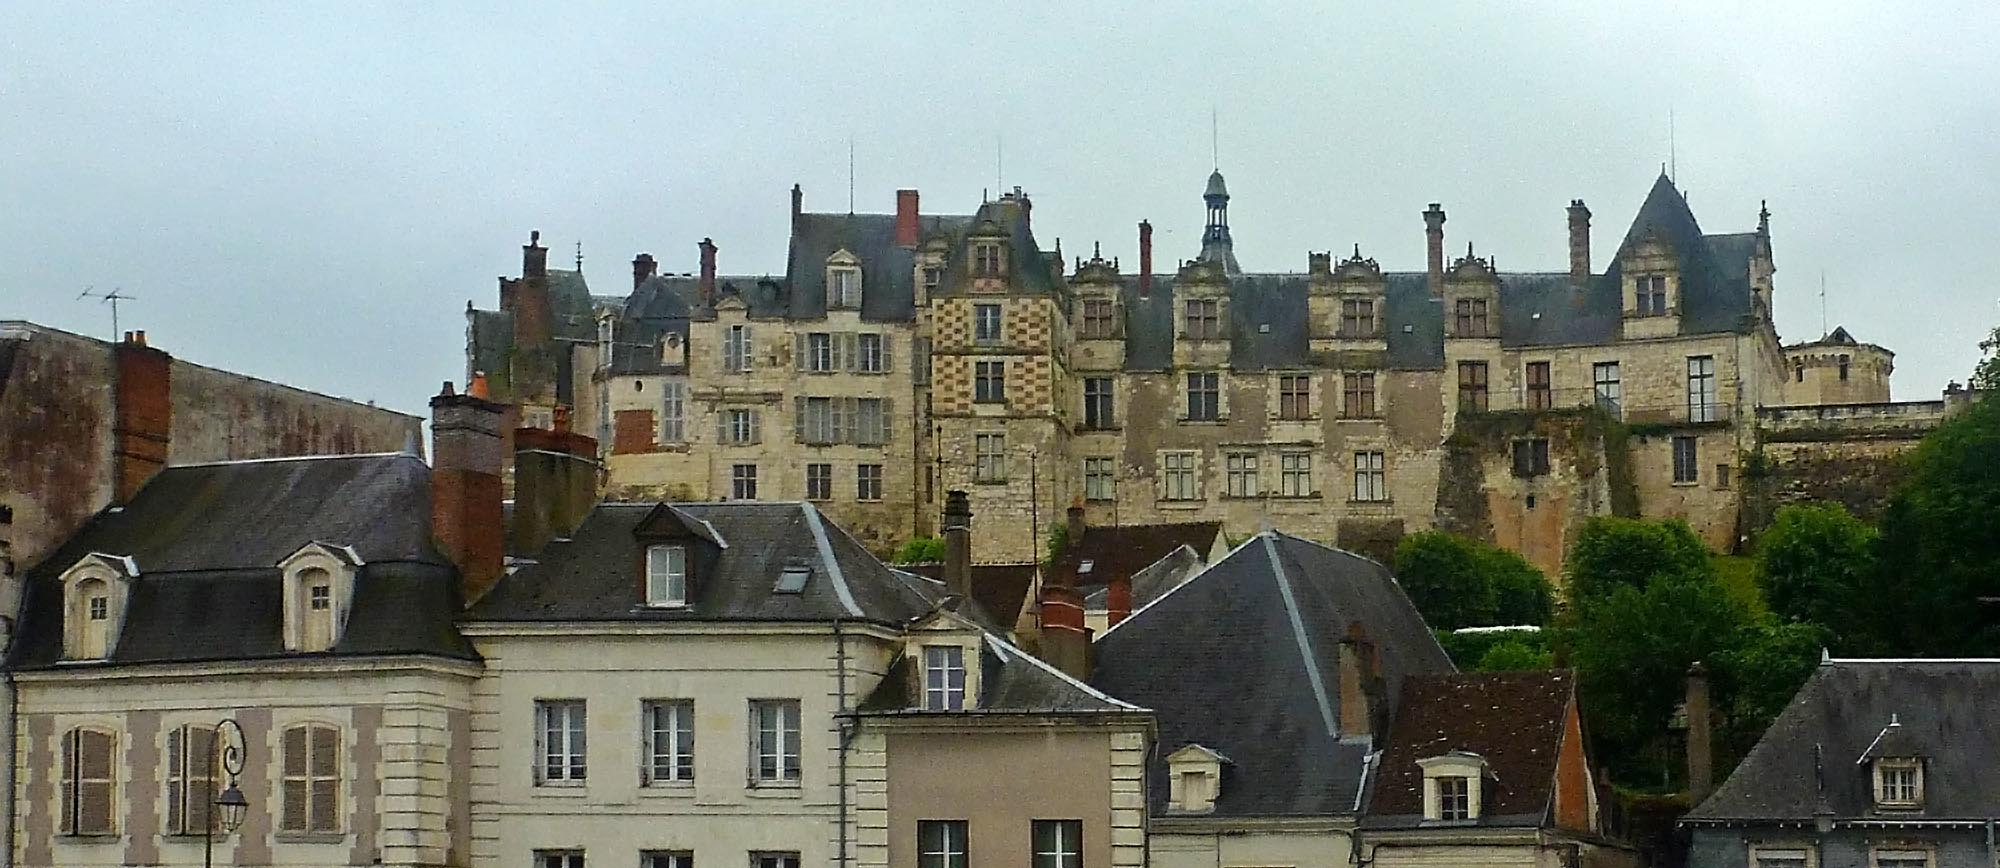 Living The Life In Saint Aignan Large Images Of The Château De Saint